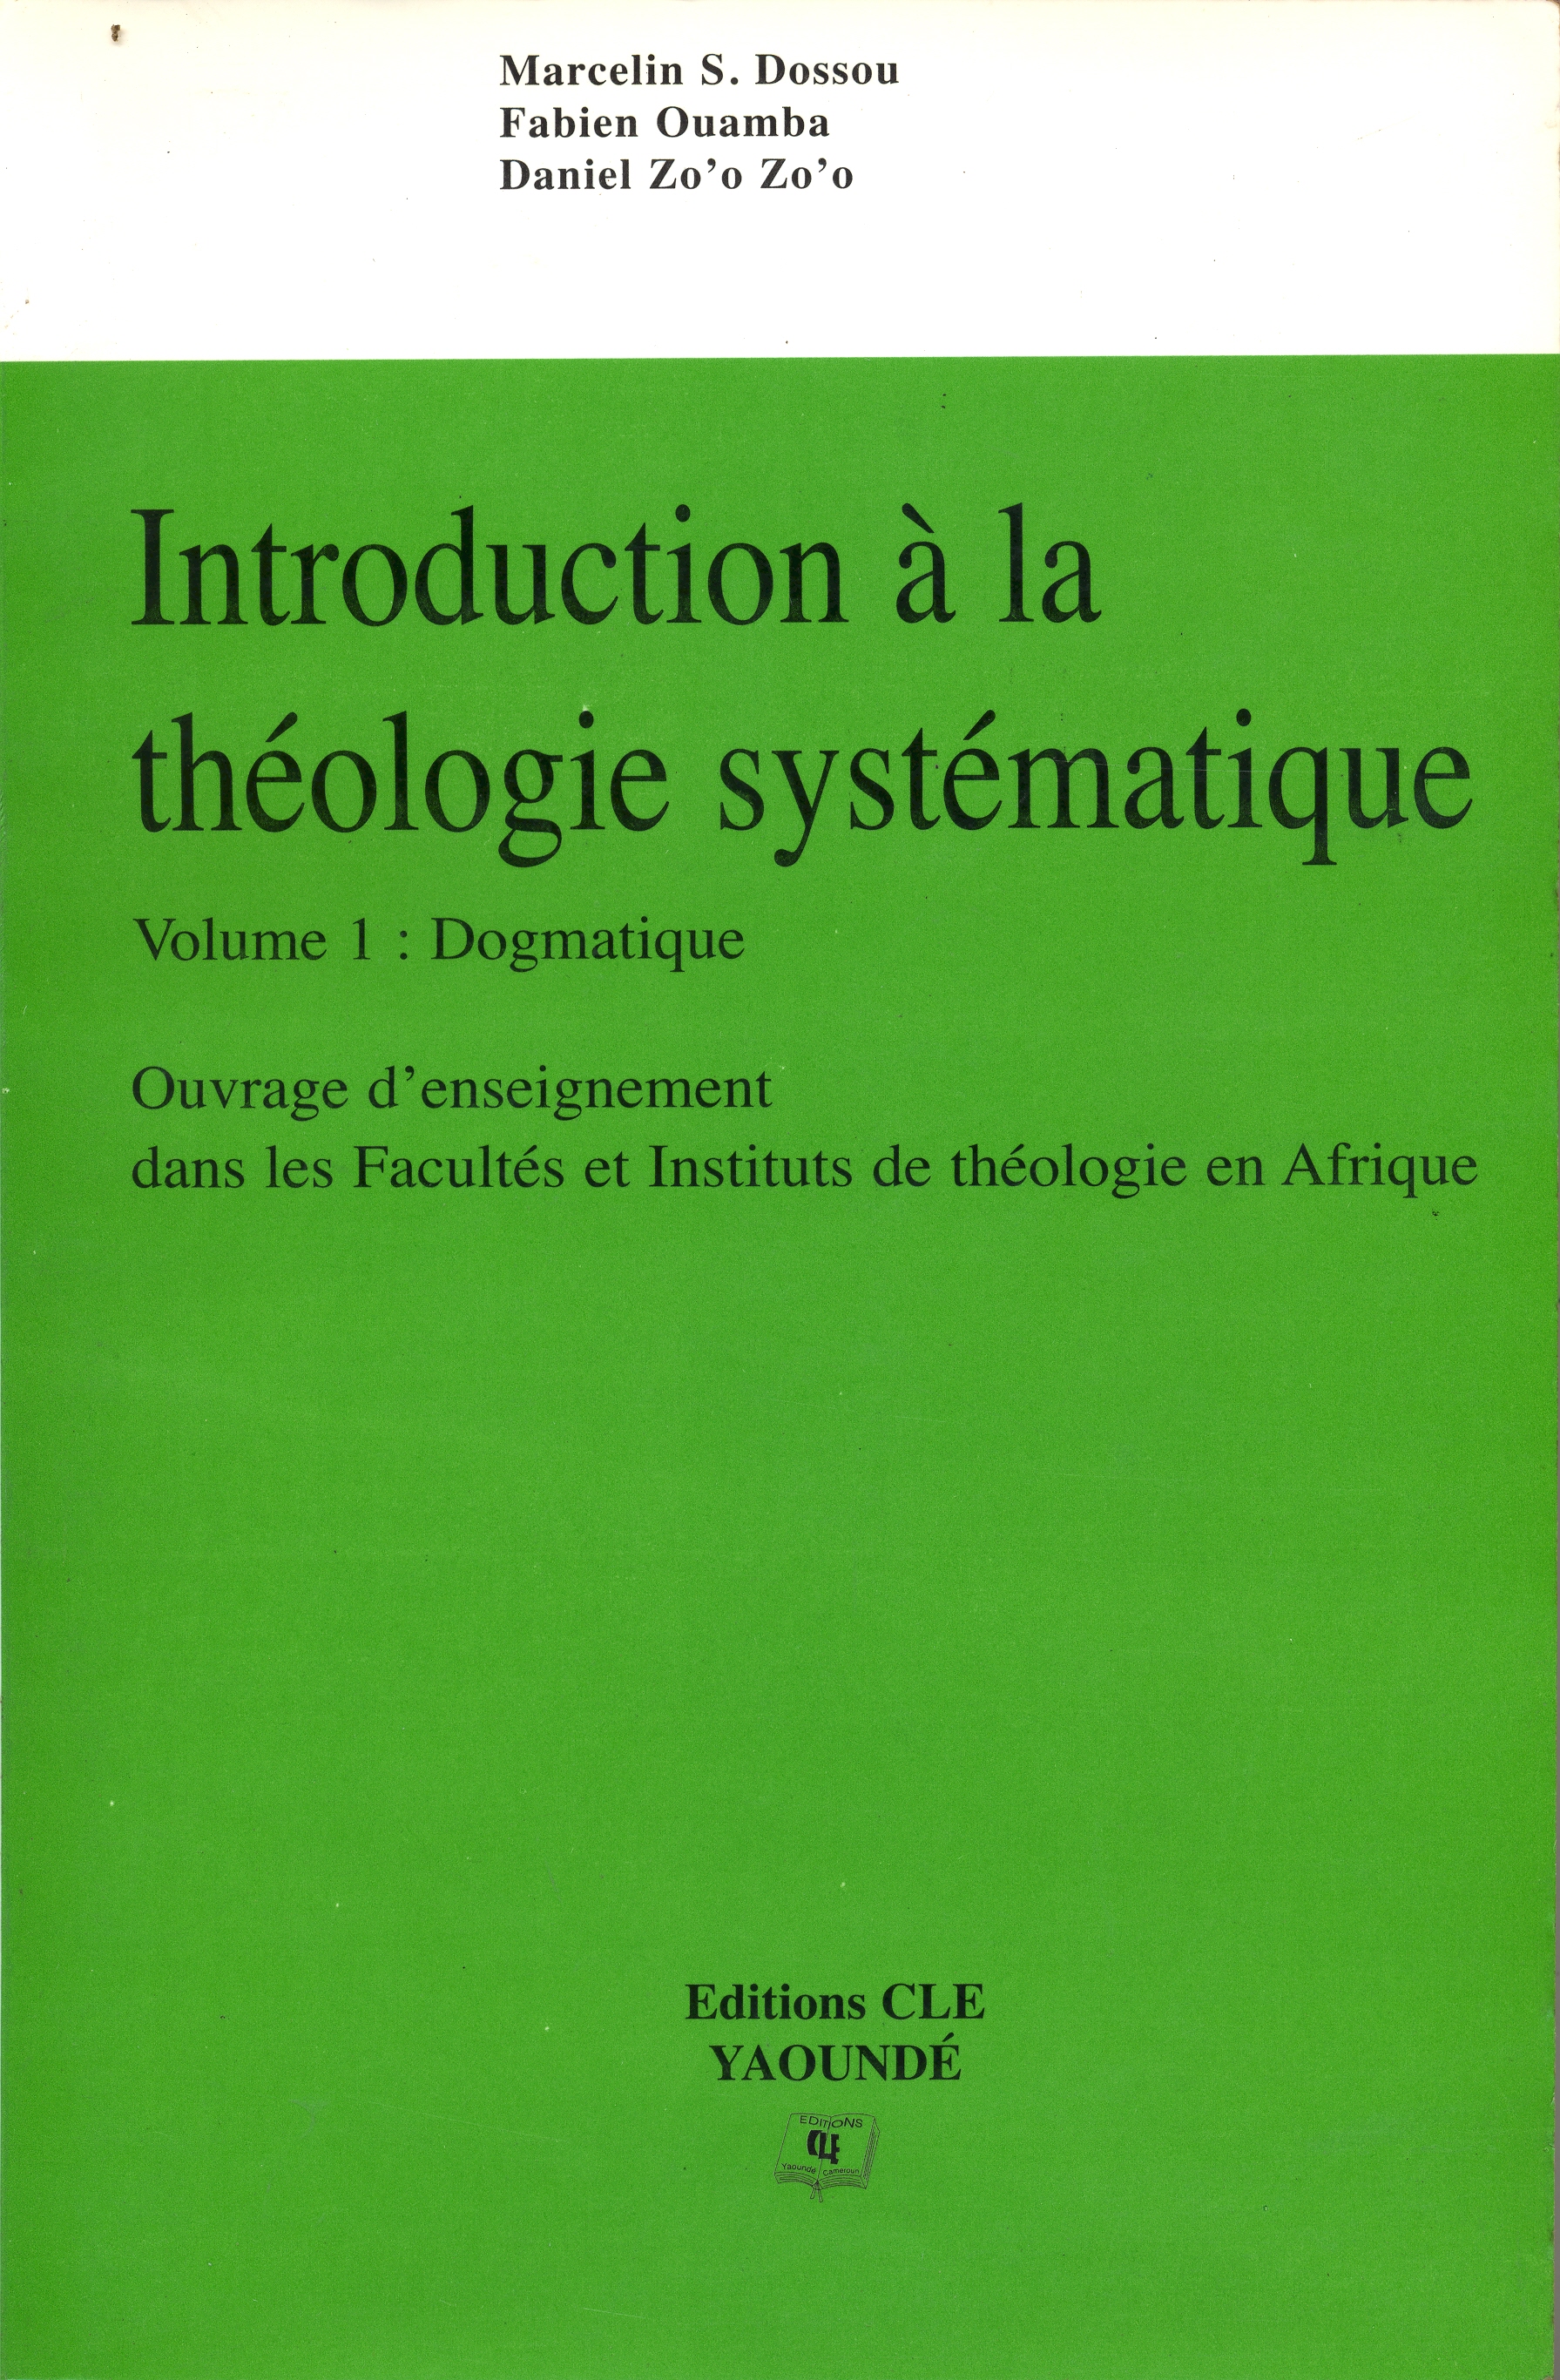 Introduction à la théologie systématique (vol.1 : dogmatique)